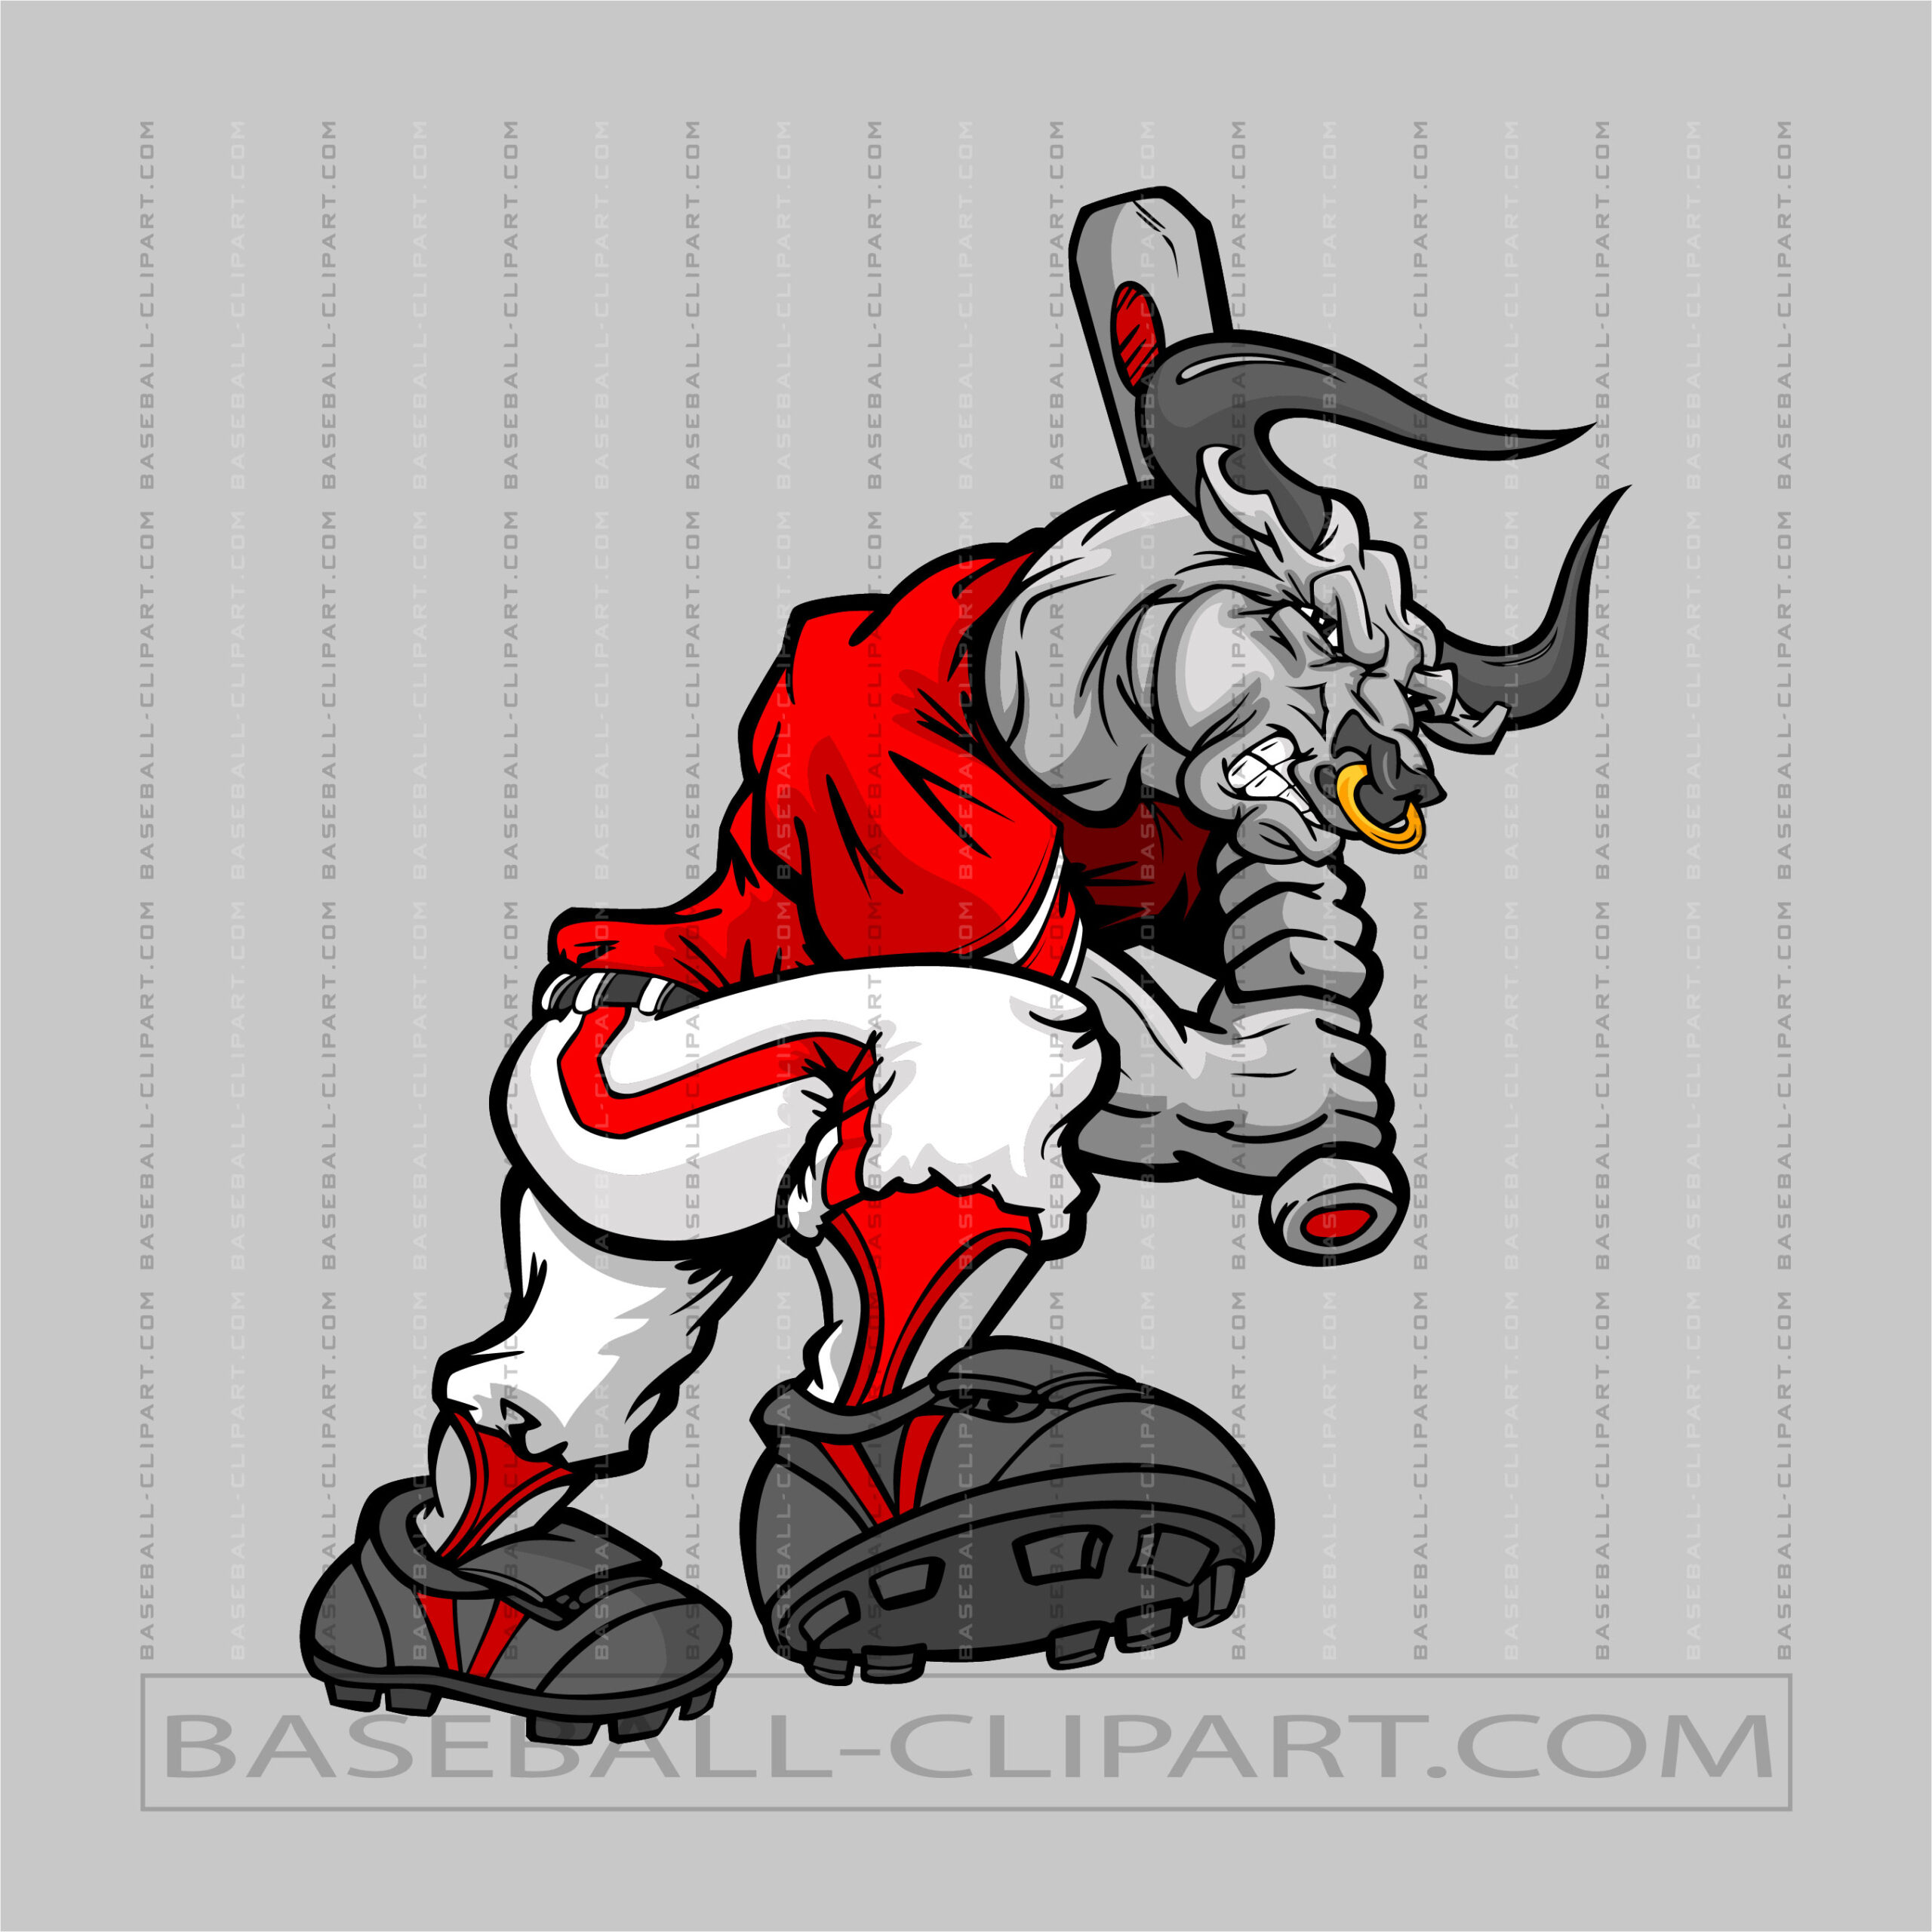 Bulls Baseball Cartoon